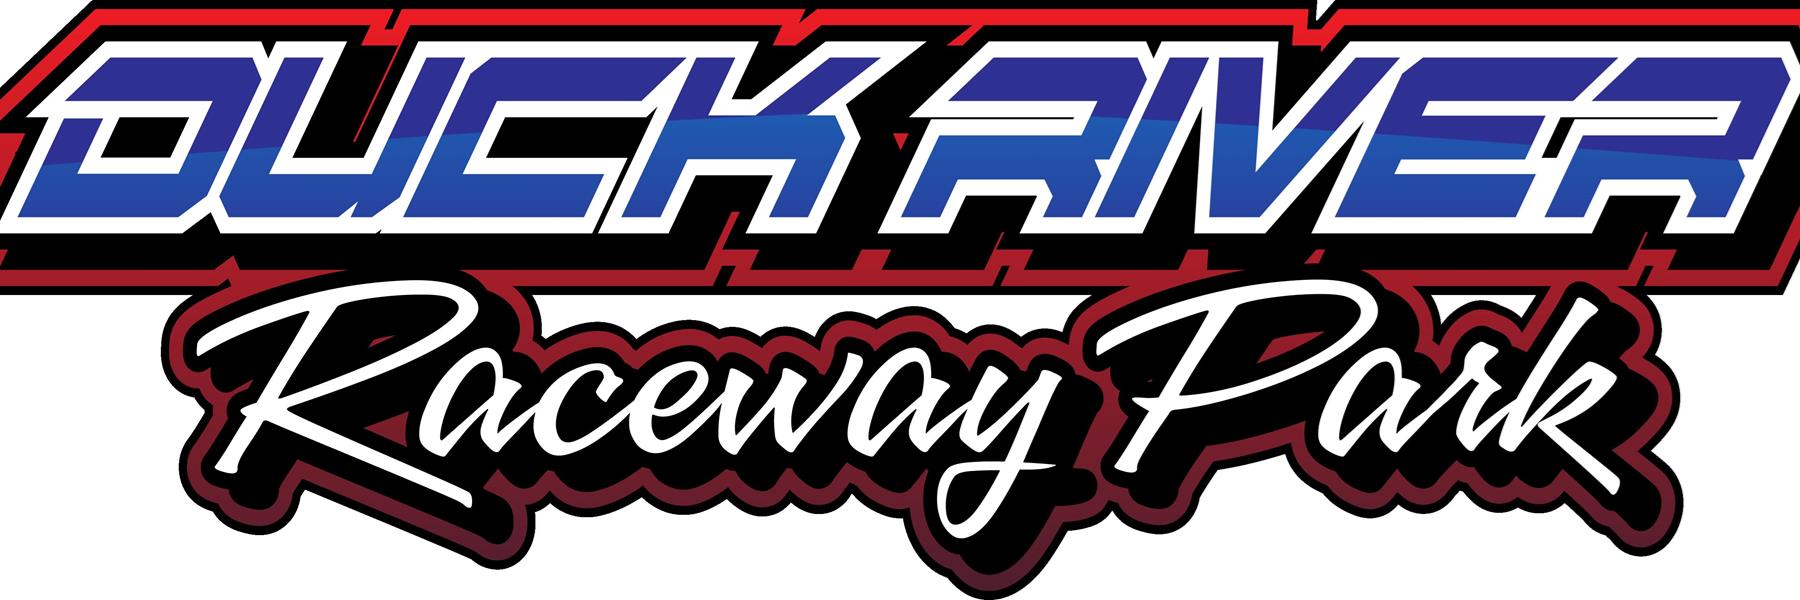 5/14/2022 - Duck River Raceway Park